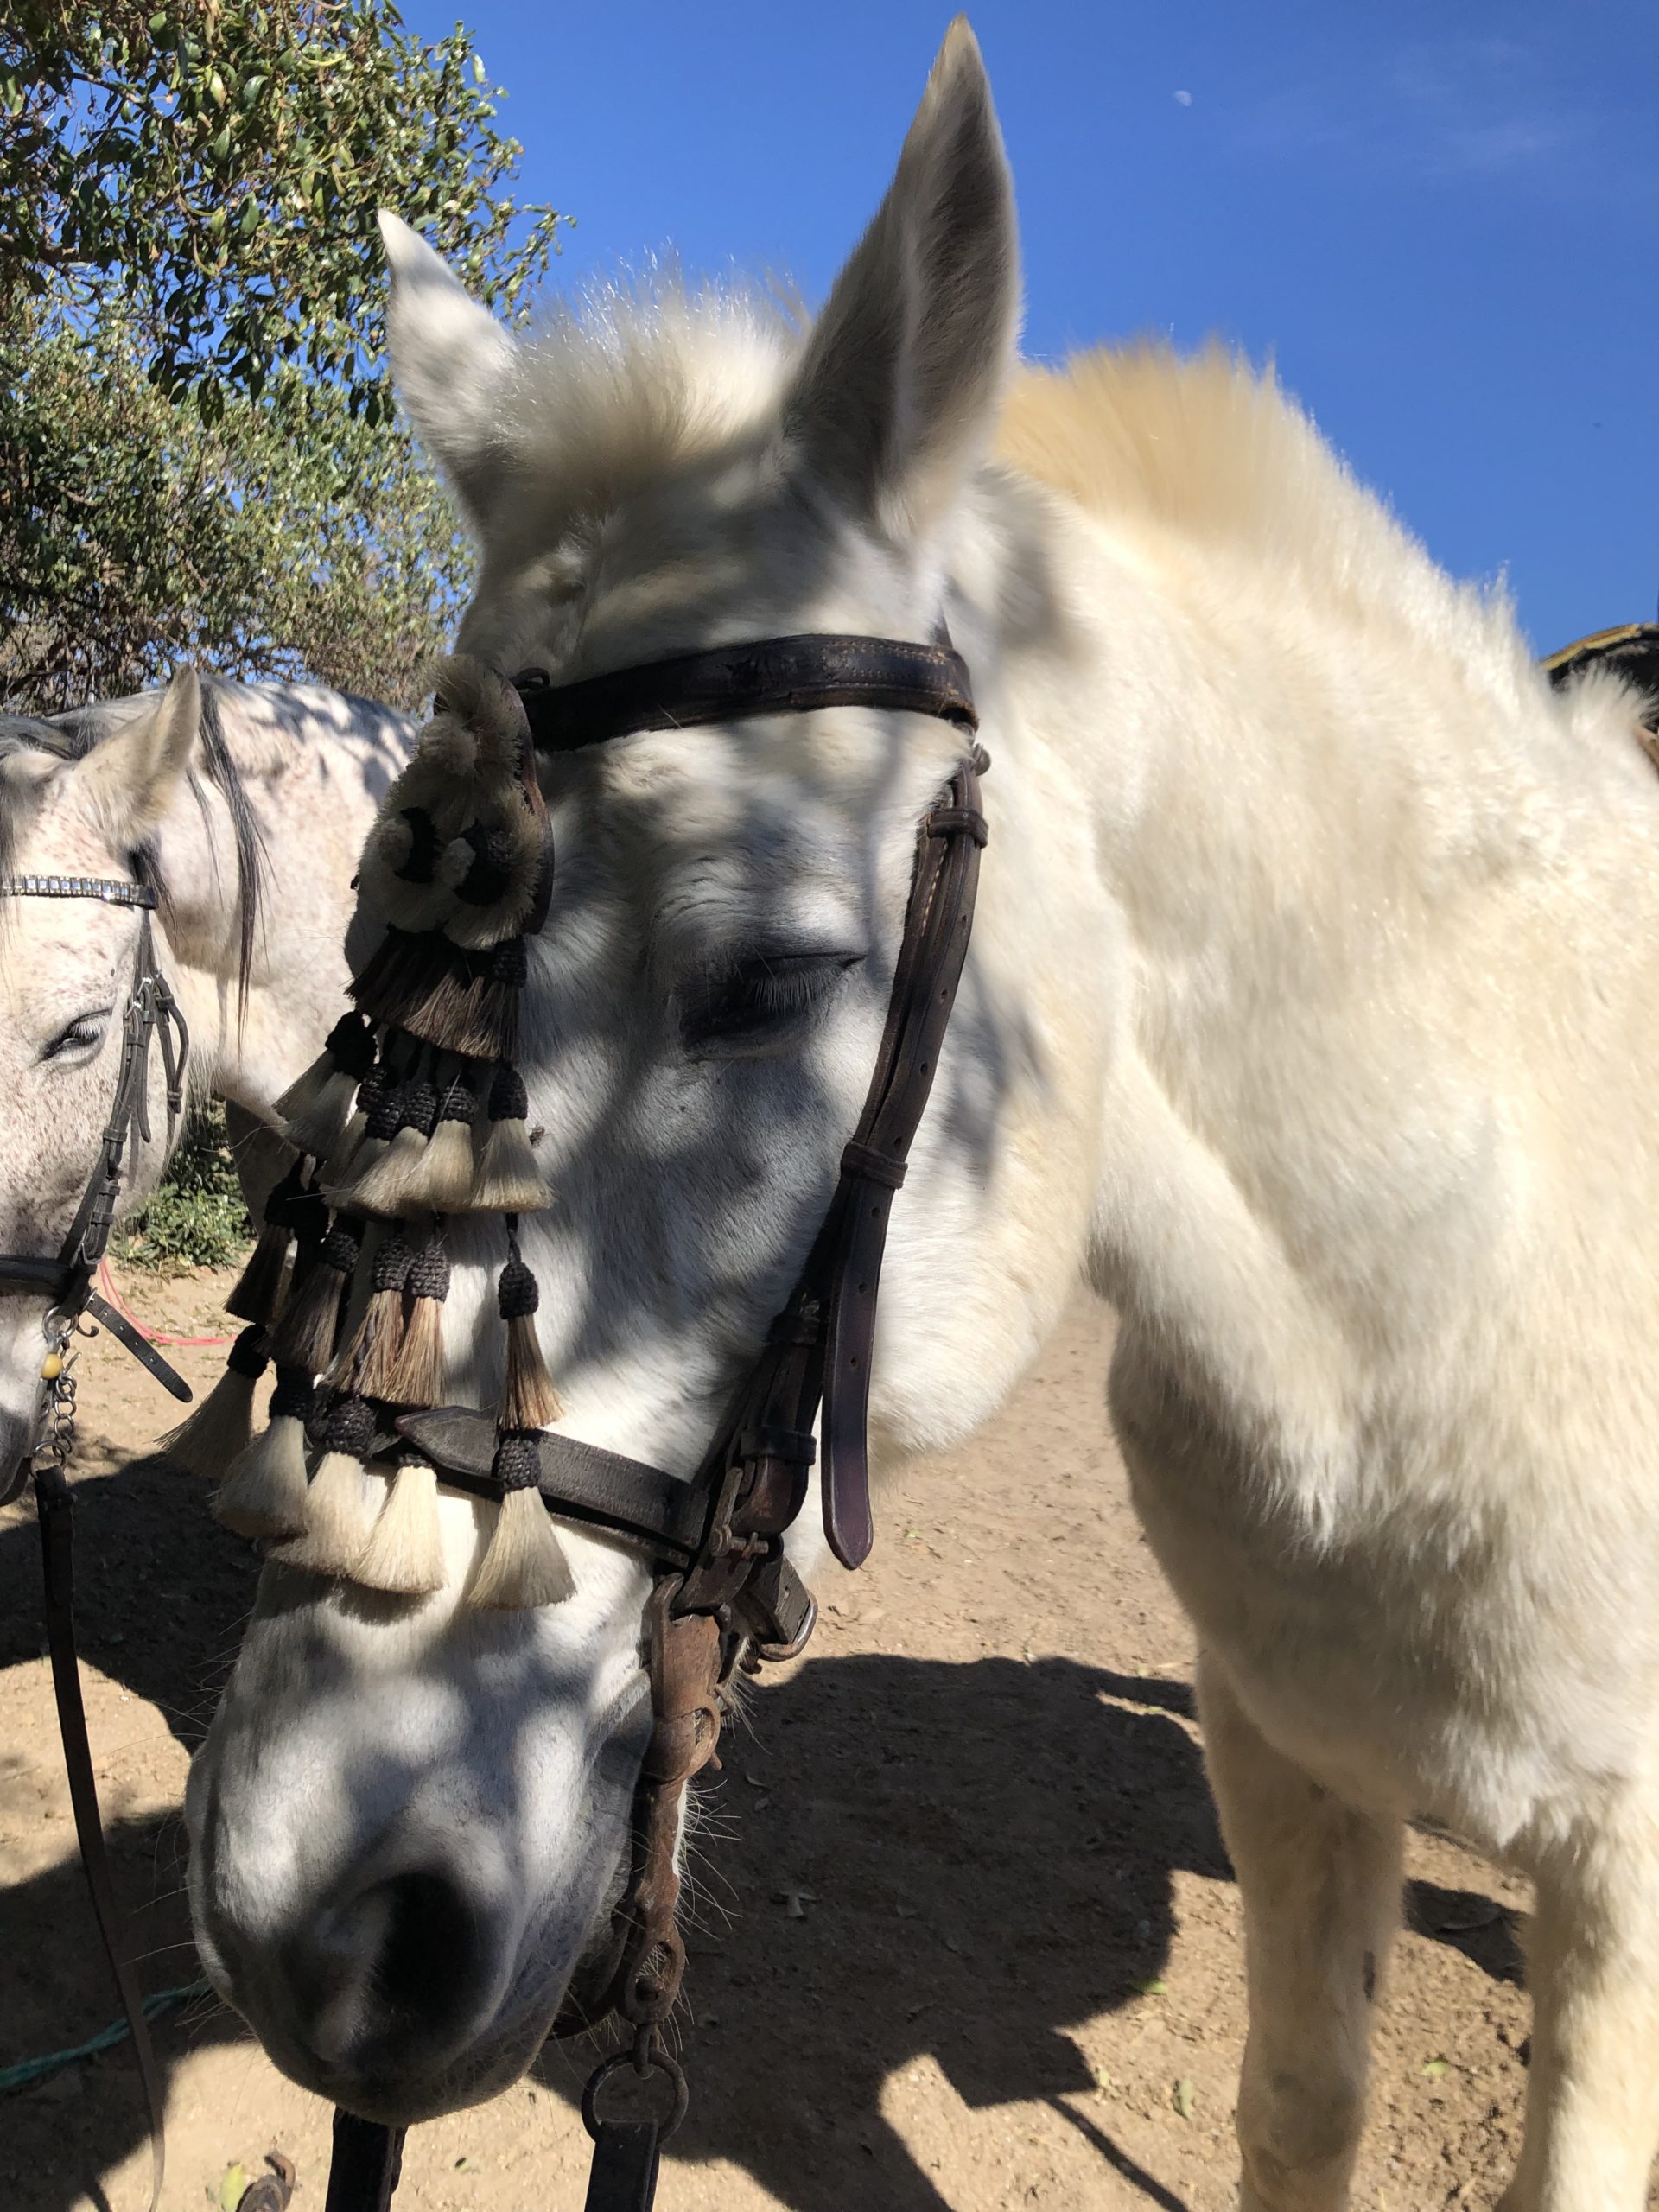 Louer cheval torremolinos malaga